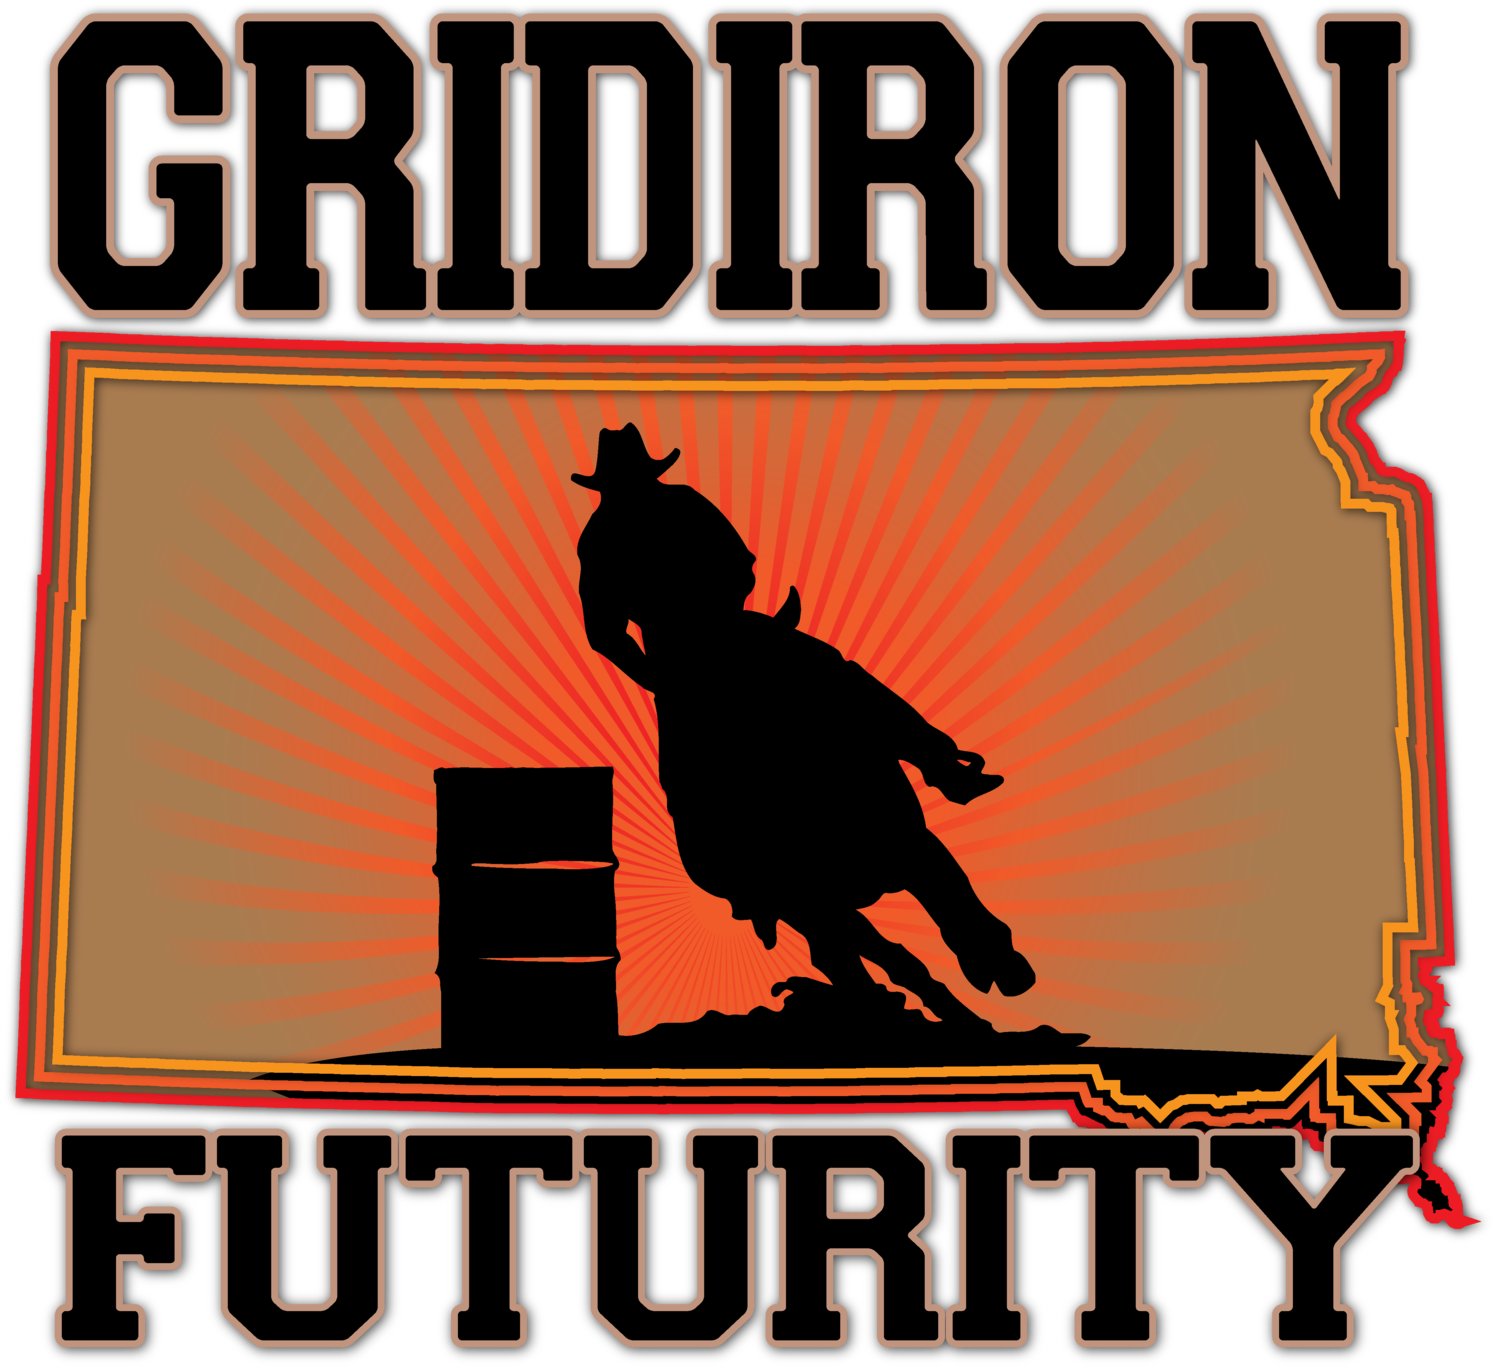 GridIron Futurity